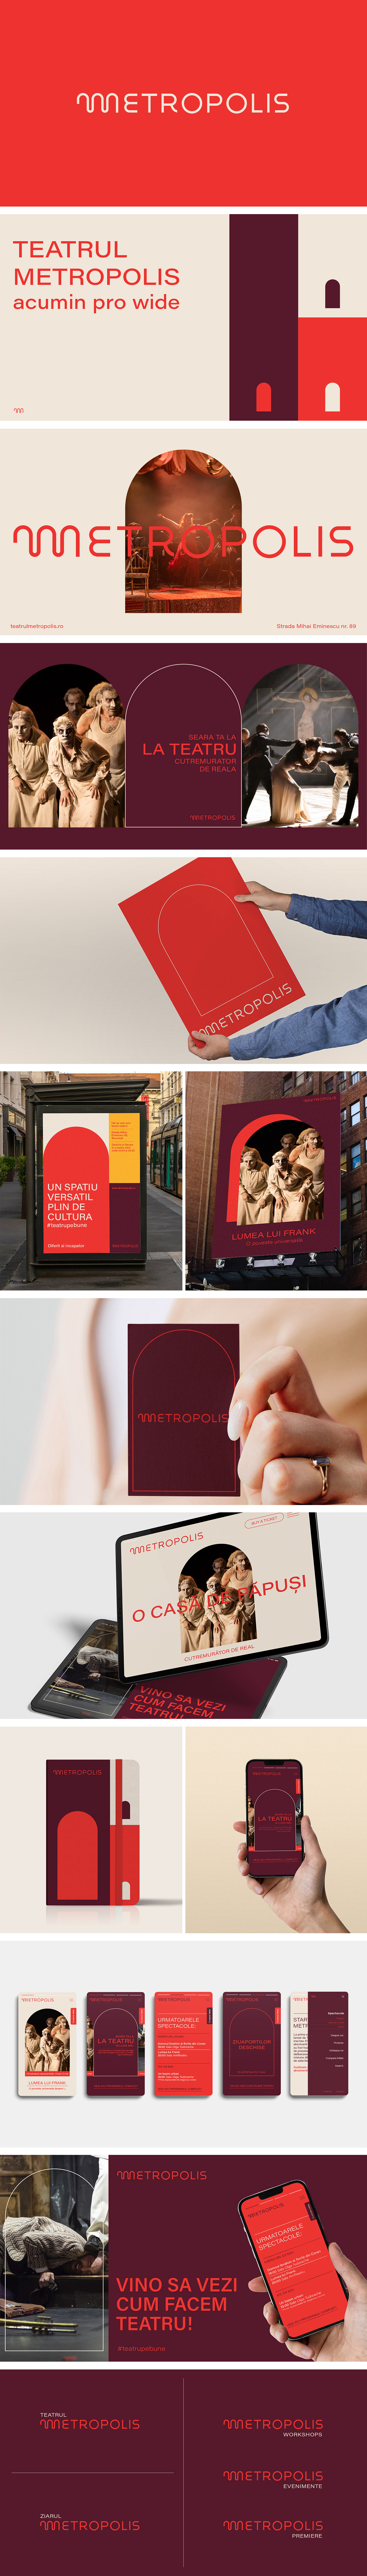 Theatre brand identity visual identity Logo Design Web Design 